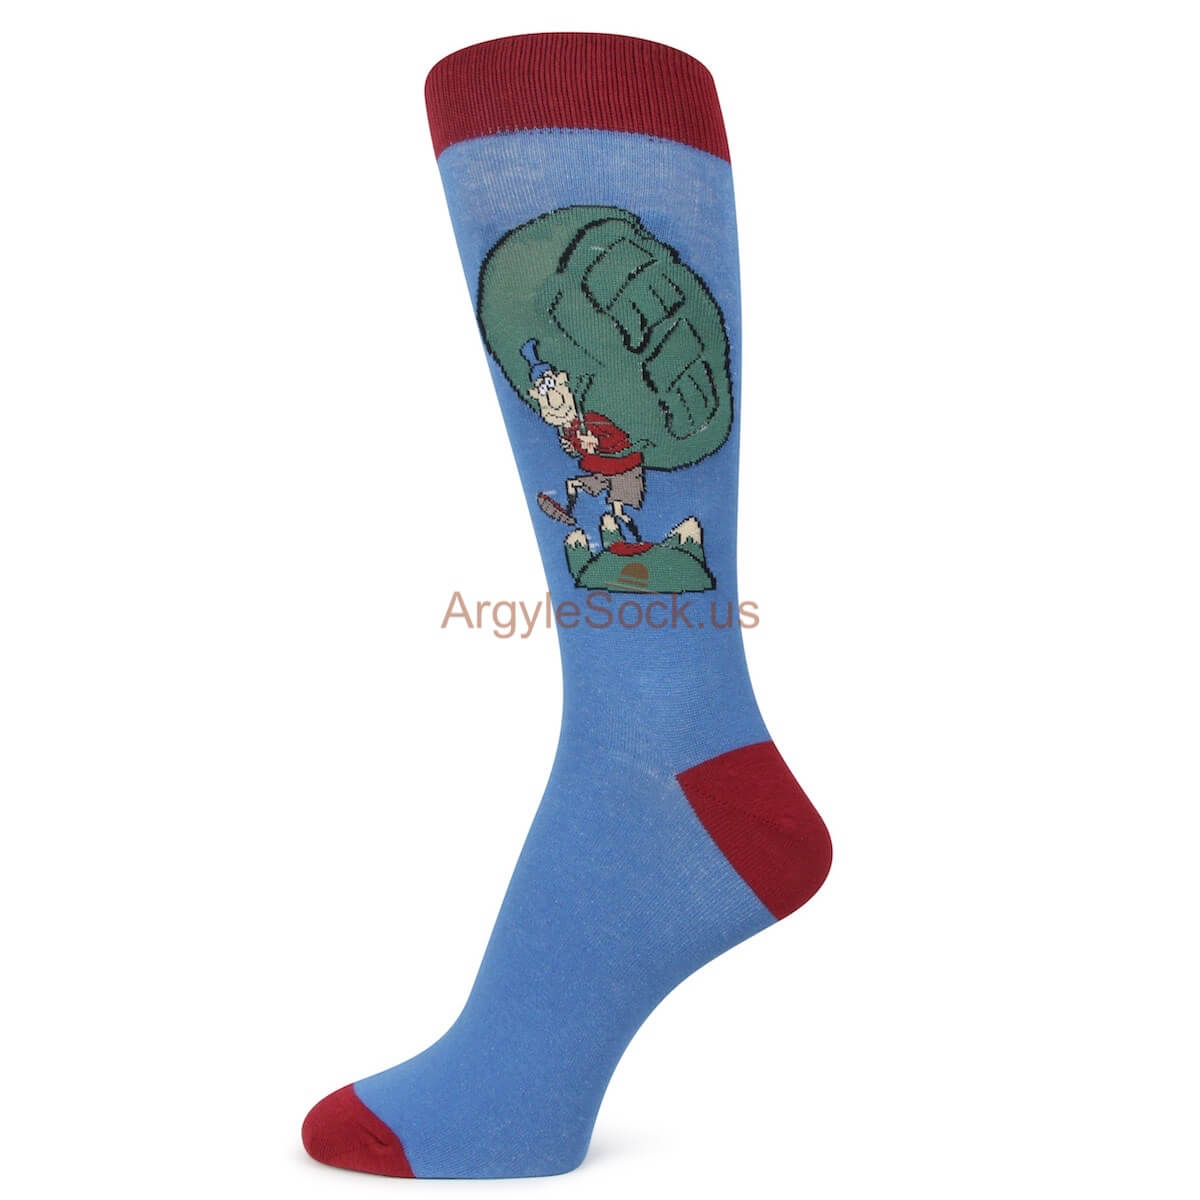 Blue and Red Wanderlust/ traveller Themed Socks for Men